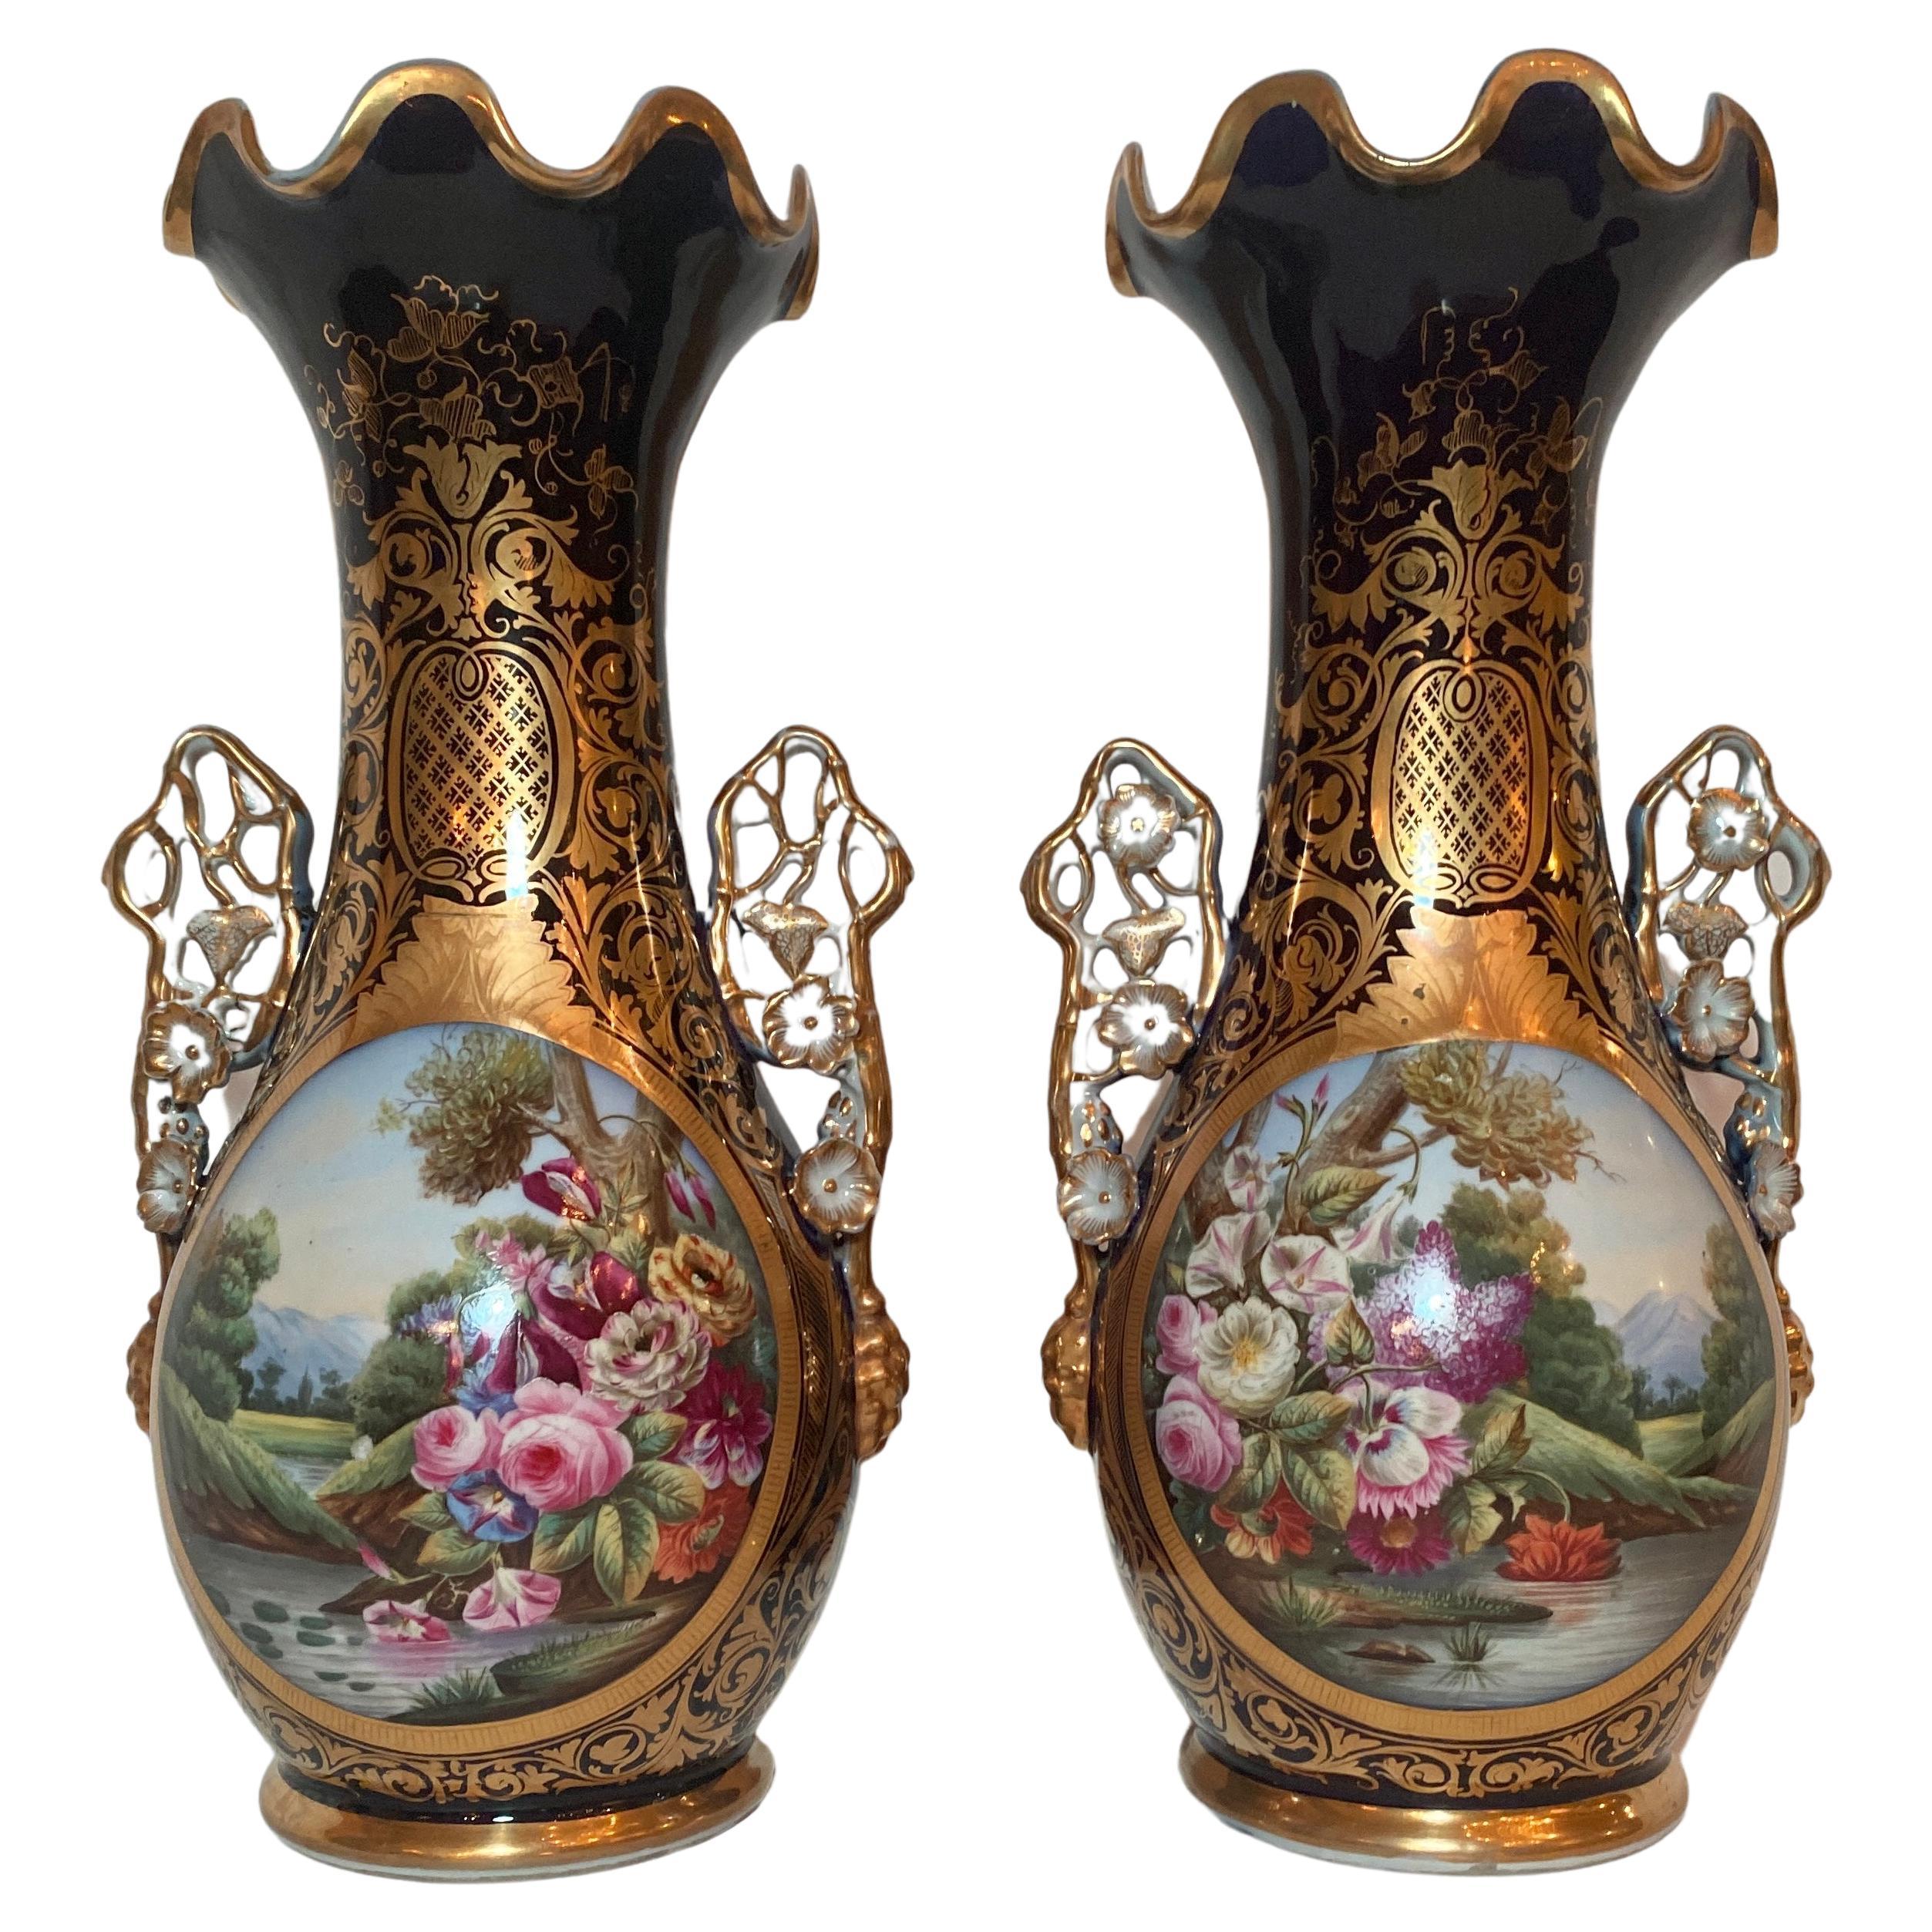 Pair Antique French "Vieux Paris" Enameled Porcelain Cobalt Urns, Circa 1845-65